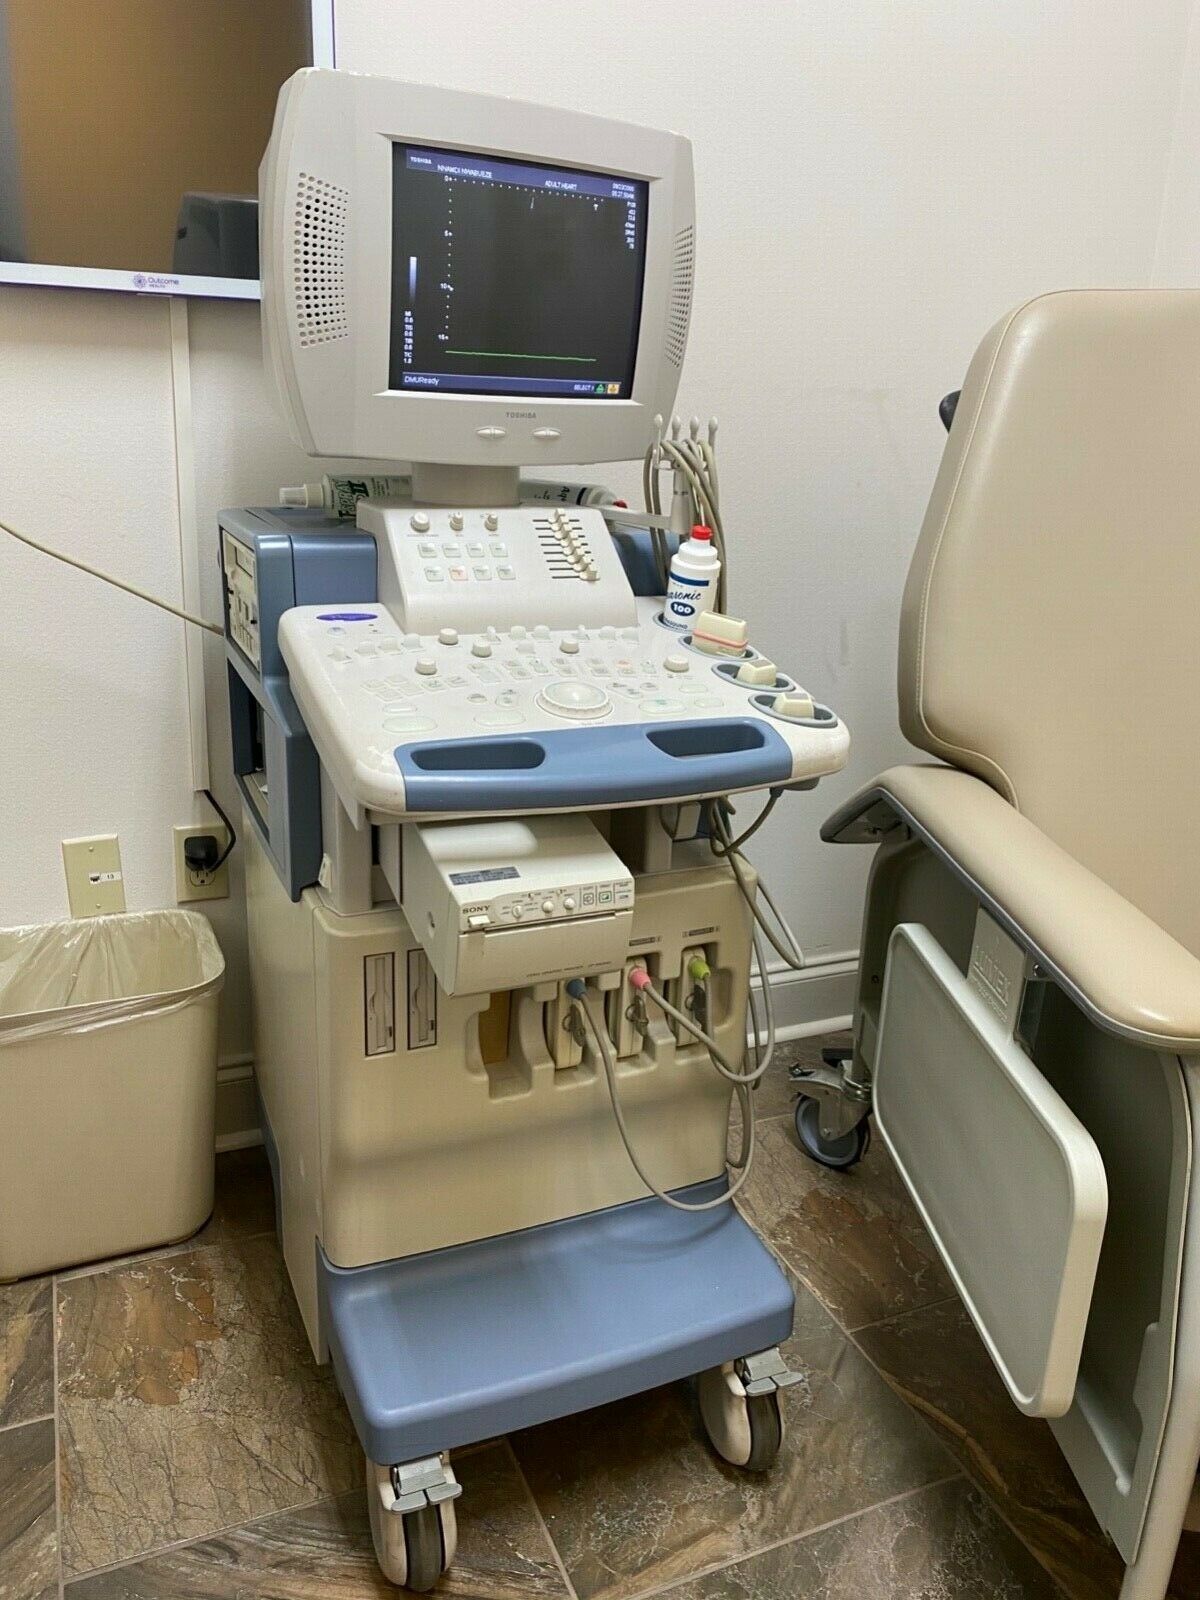 TOSHIBA NEMIO 30 SSA- 550A COMPLETE DIAGNOSTIC SYSTEM ULTRASOUND MACHINE DIAGNOSTIC ULTRASOUND MACHINES FOR SALE